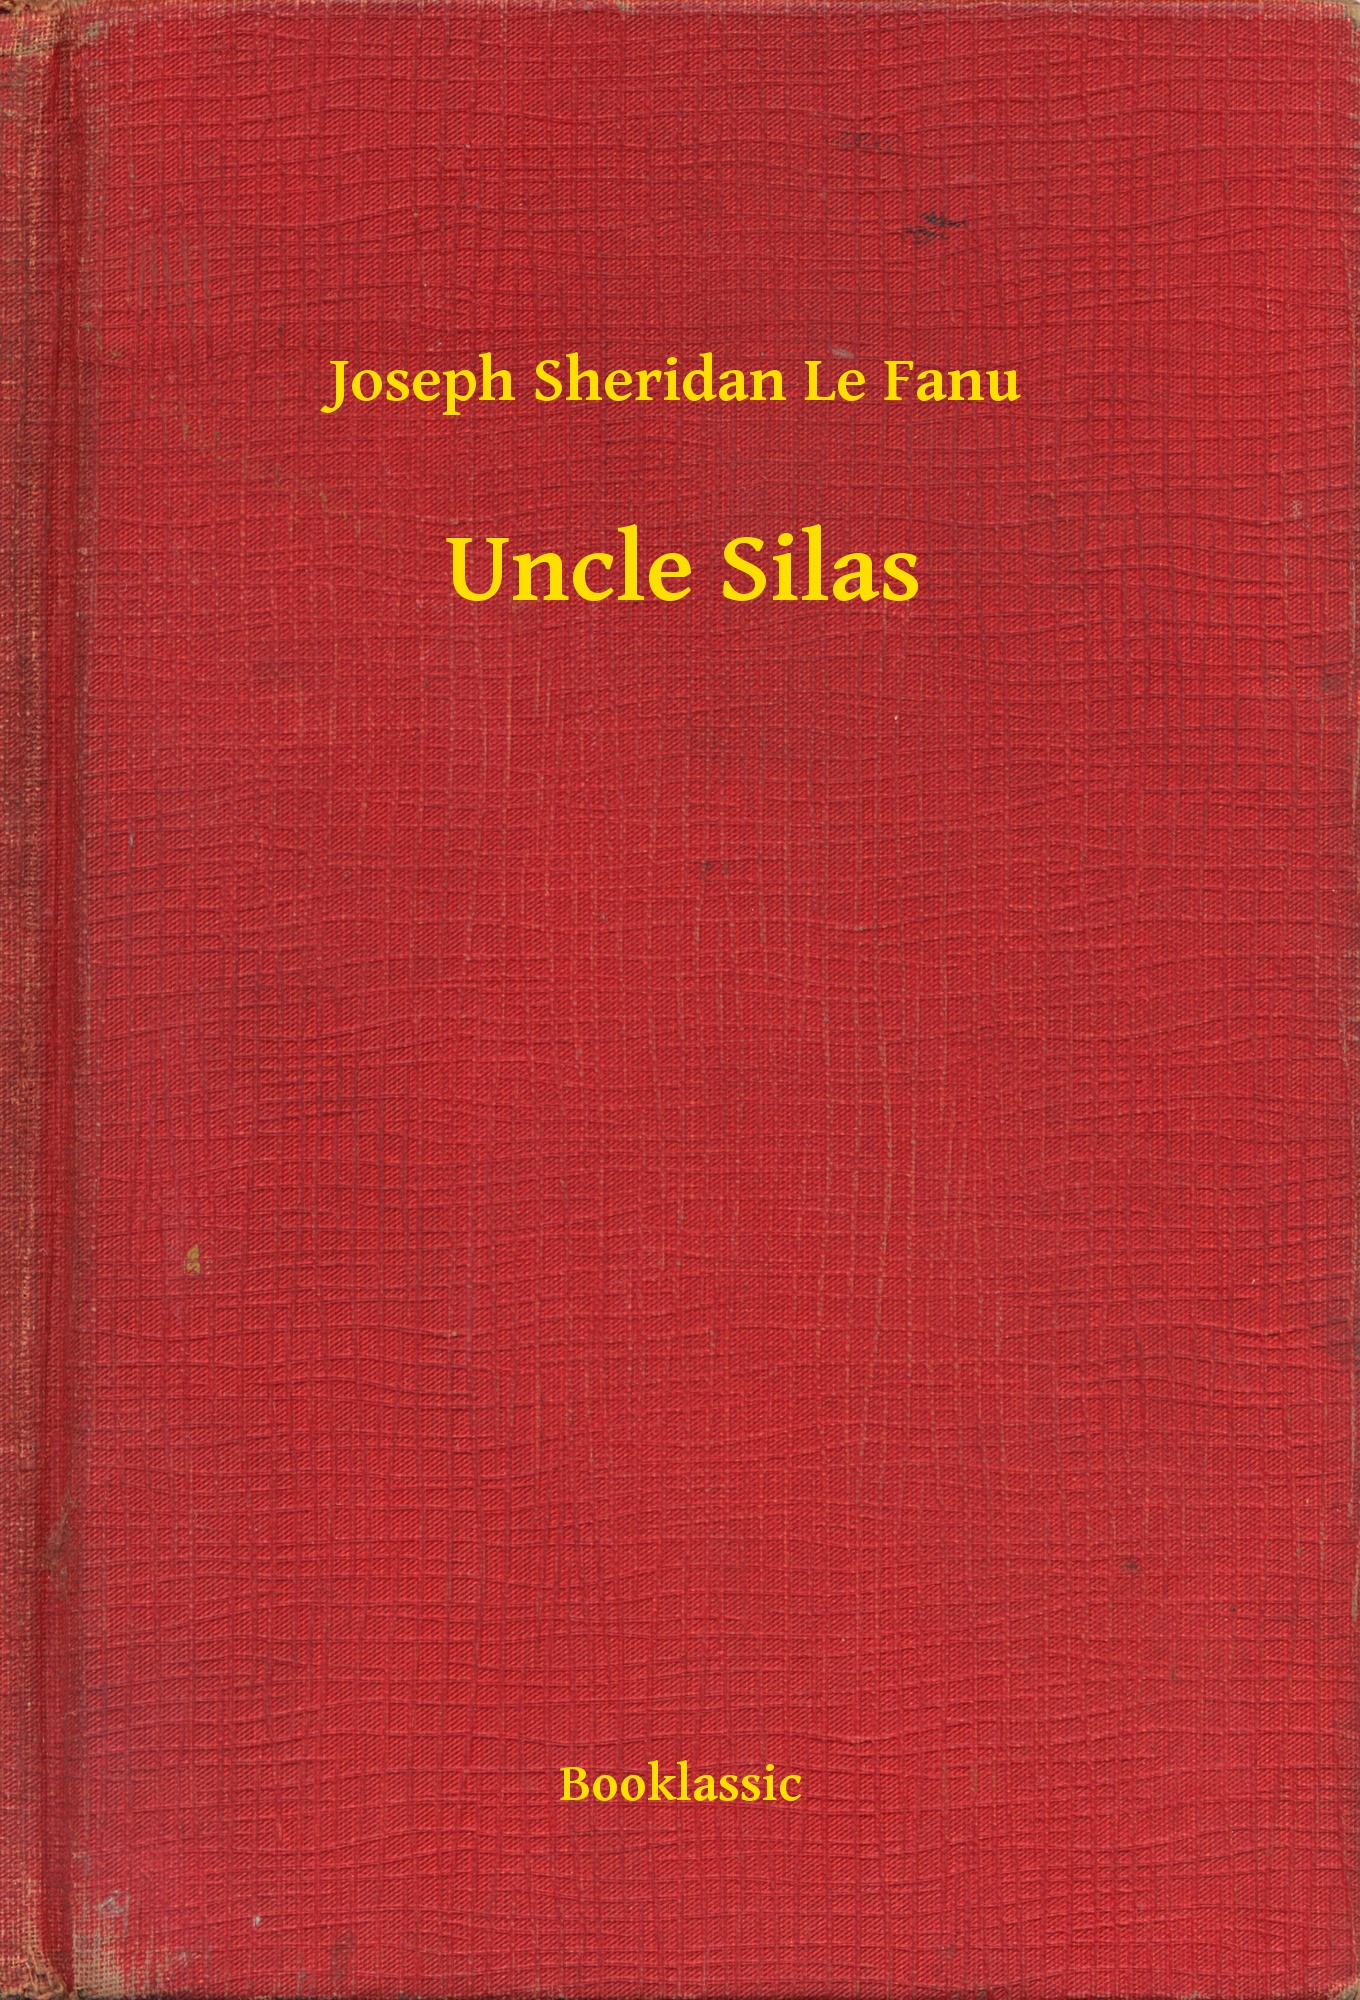 Uncle Silas